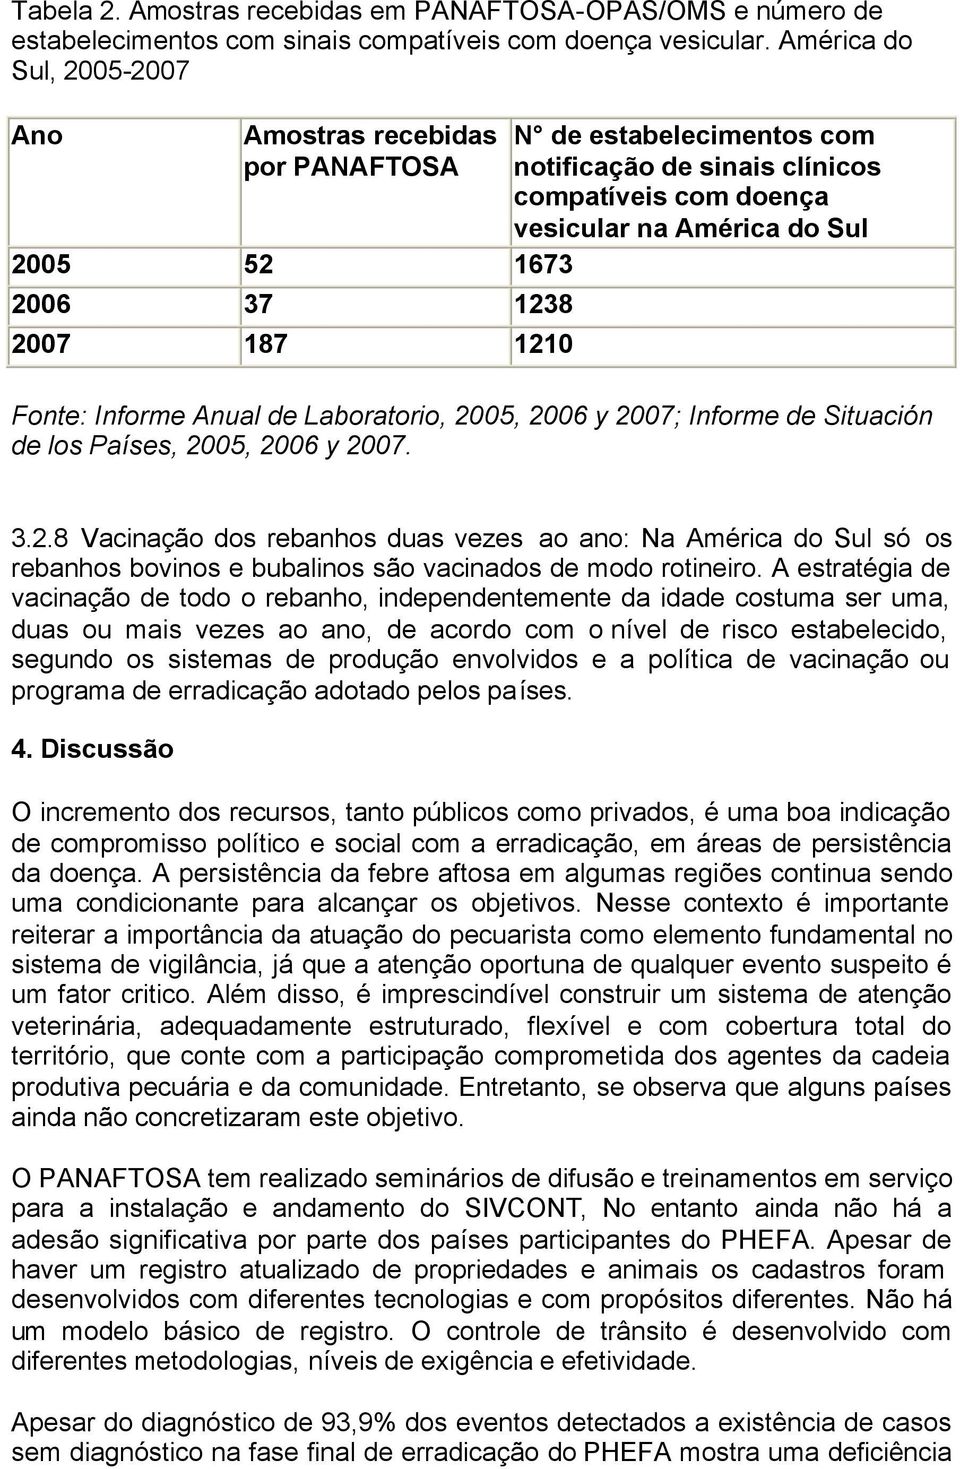 América do Sul Fonte: Informe Anual de Laboratorio, 2005, 2006 y 2007; Informe de Situación de los Países, 2005, 2006 y 2007. 3.2.8 Vacinação dos rebanhos duas vezes ao ano: Na América do Sul só os rebanhos bovinos e bubalinos são vacinados de modo rotineiro.